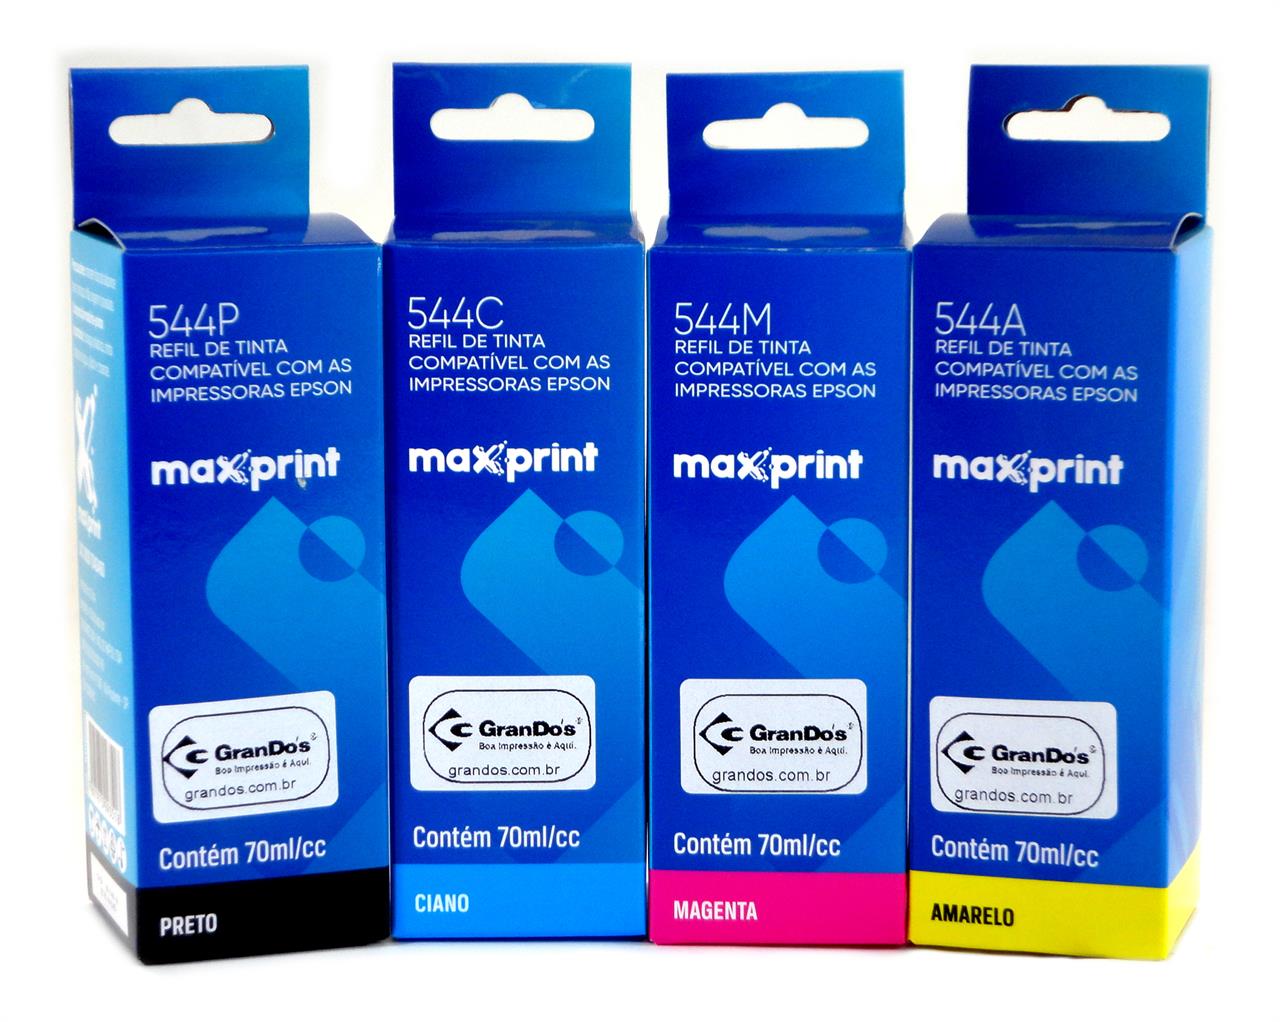 Kit de Refil de Tinta Maxprint Similar 544 em Pack com as 4 Cores